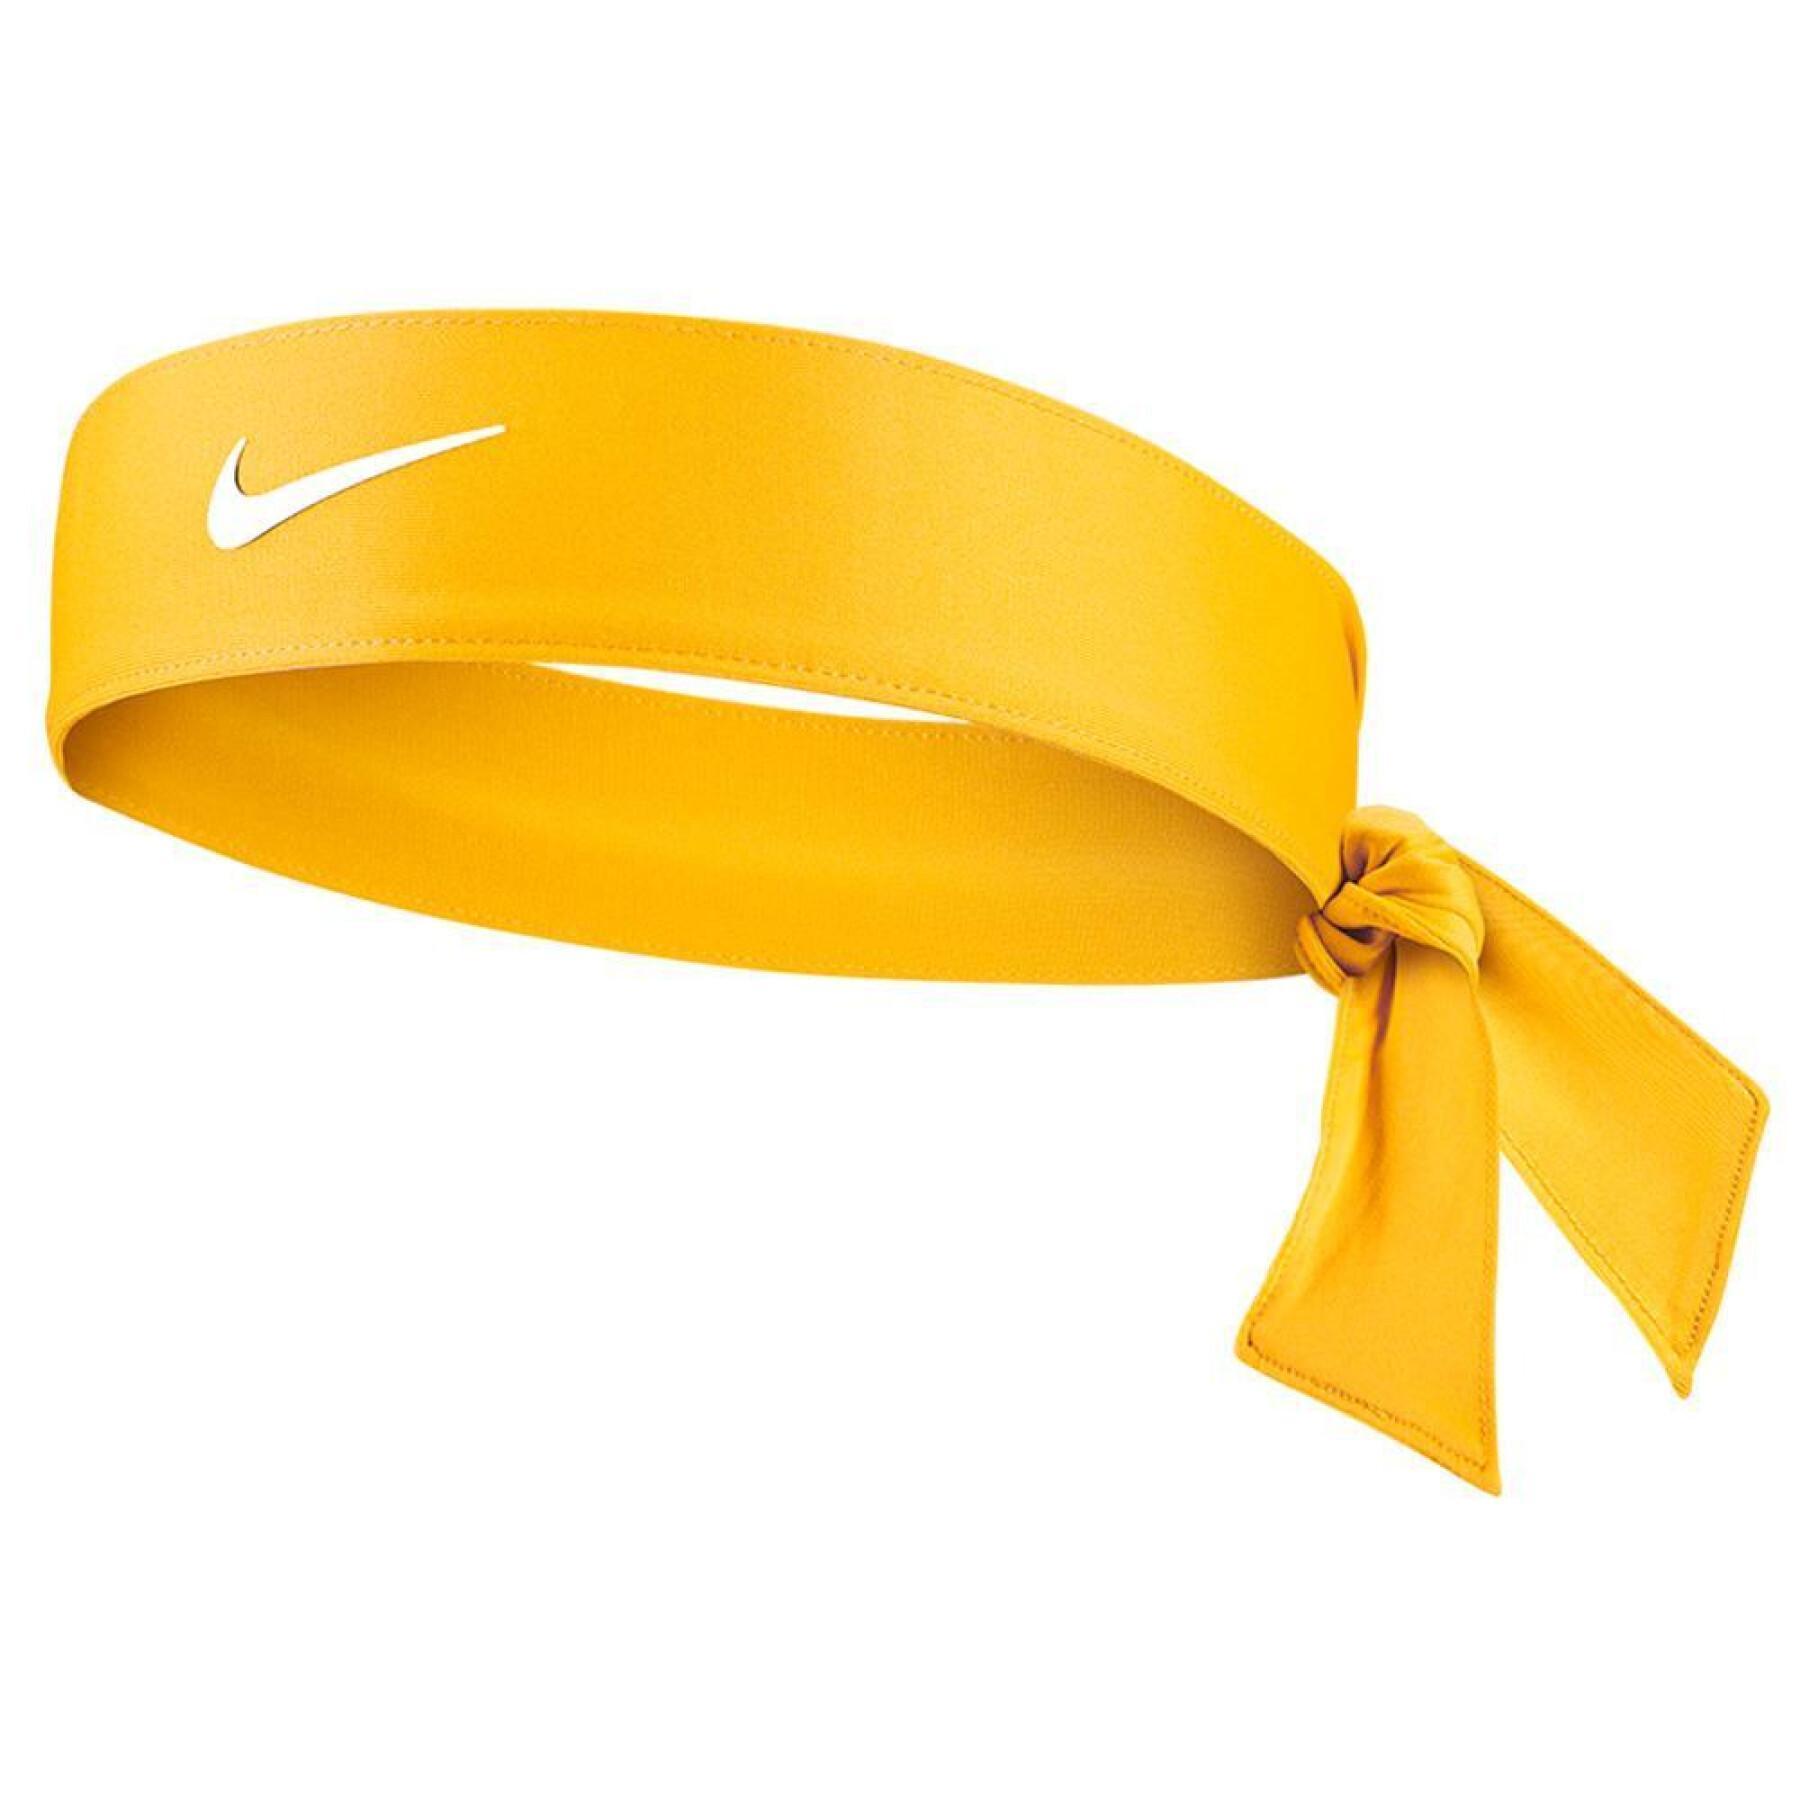 Stirnband für Frauen Nike tennis premier teams